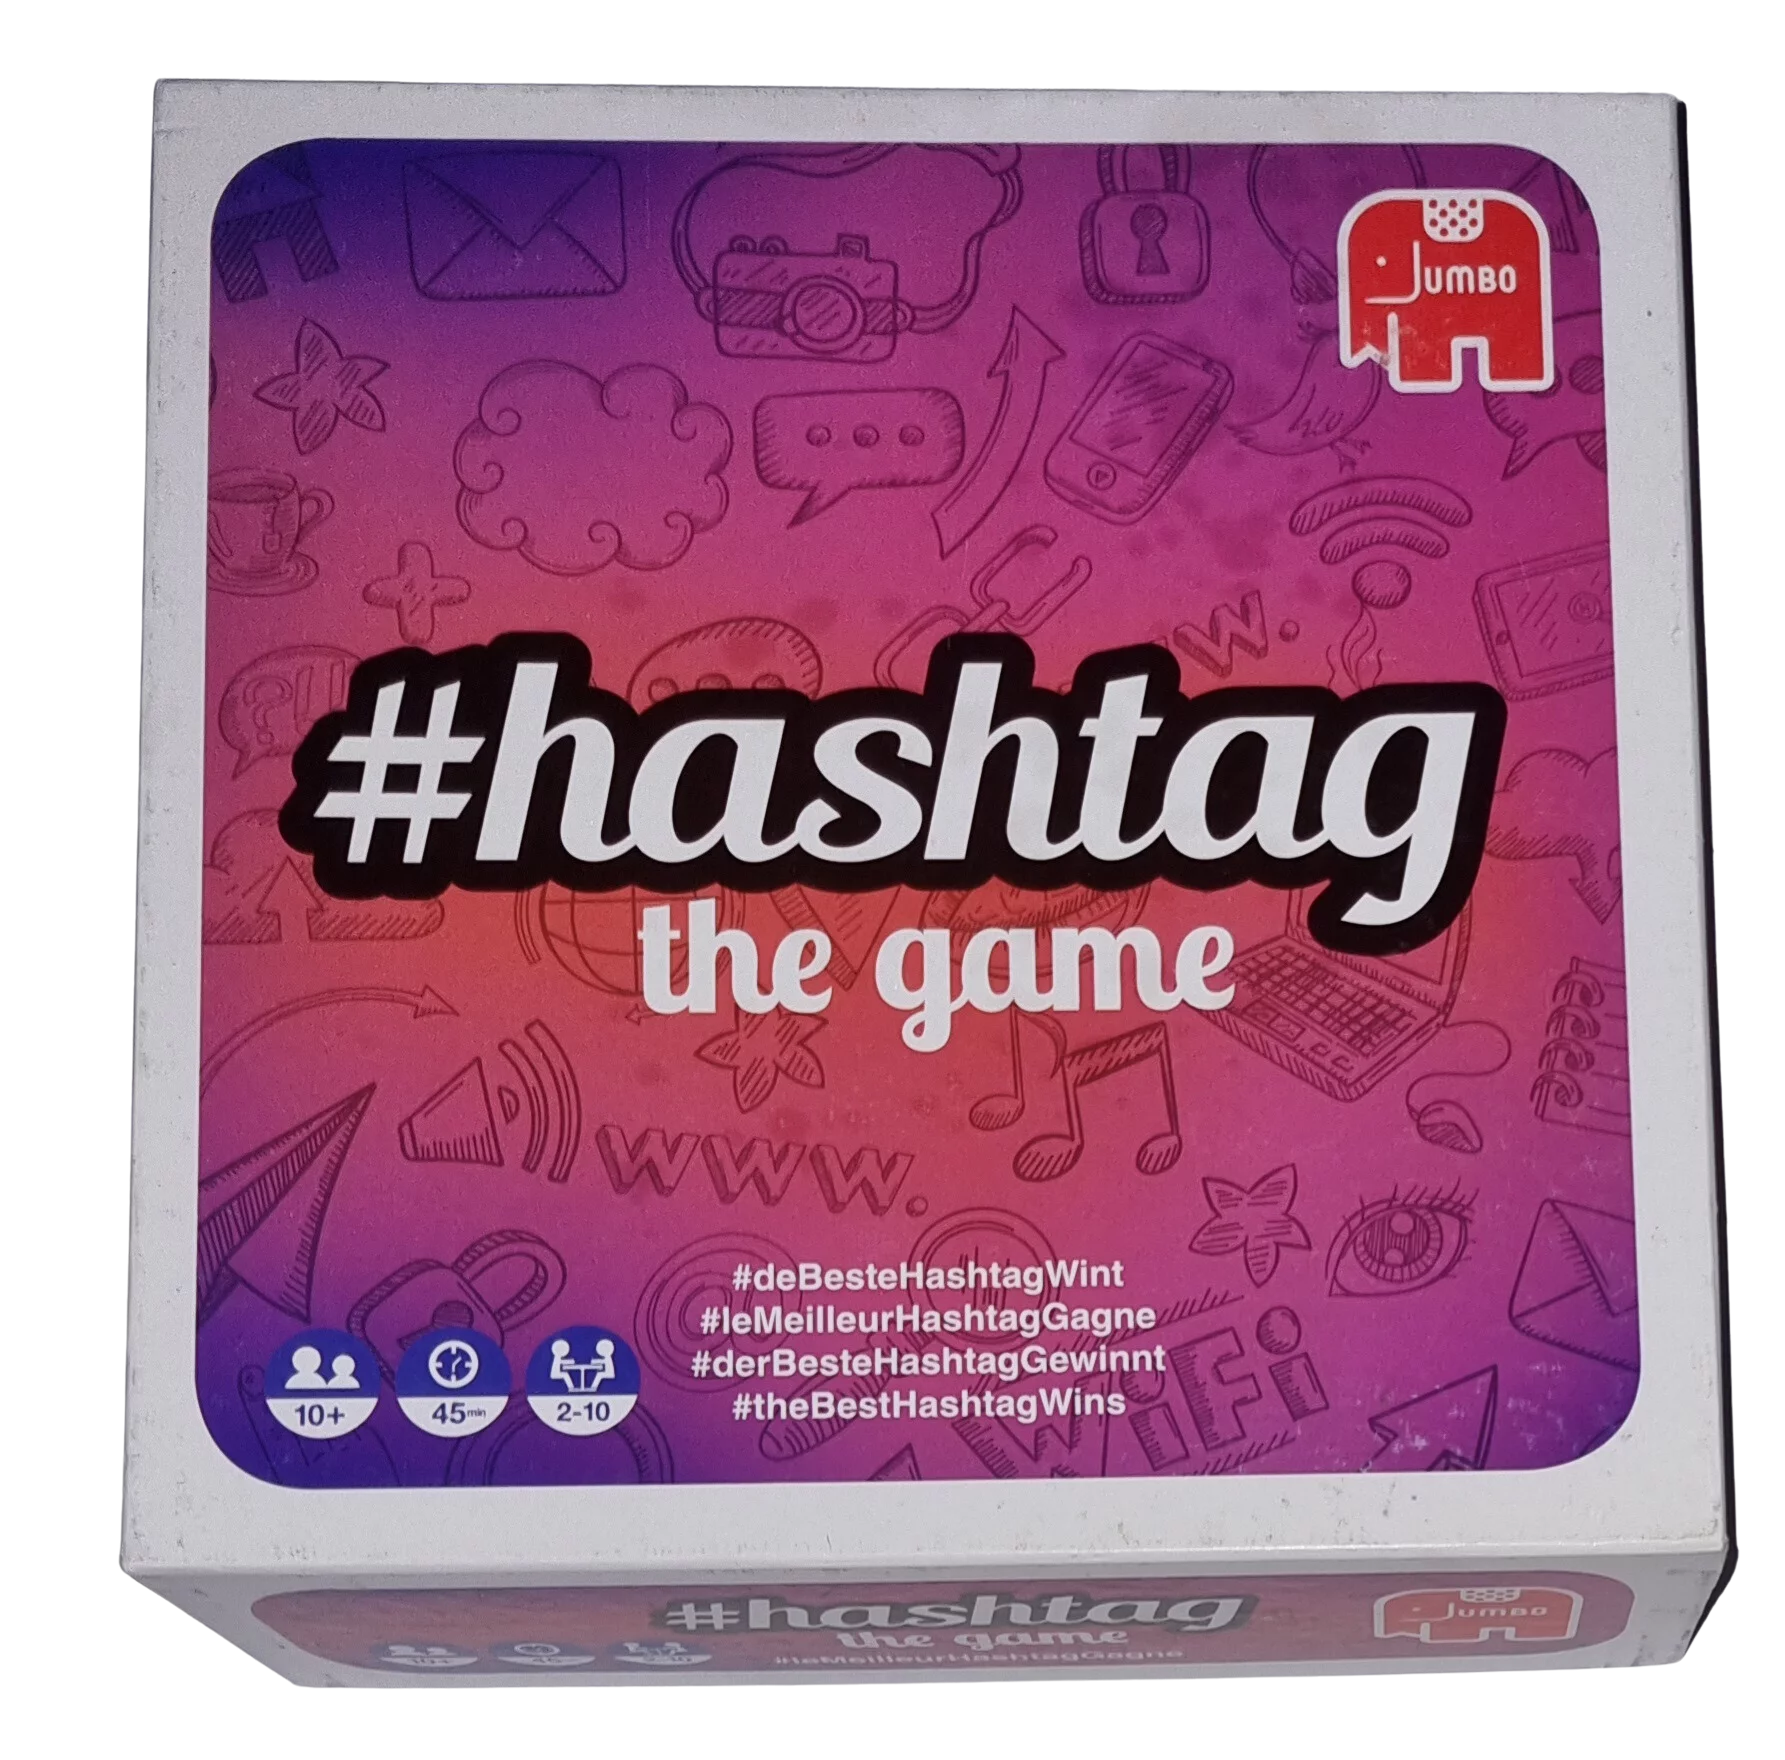 Jumbo #Hashtag the game